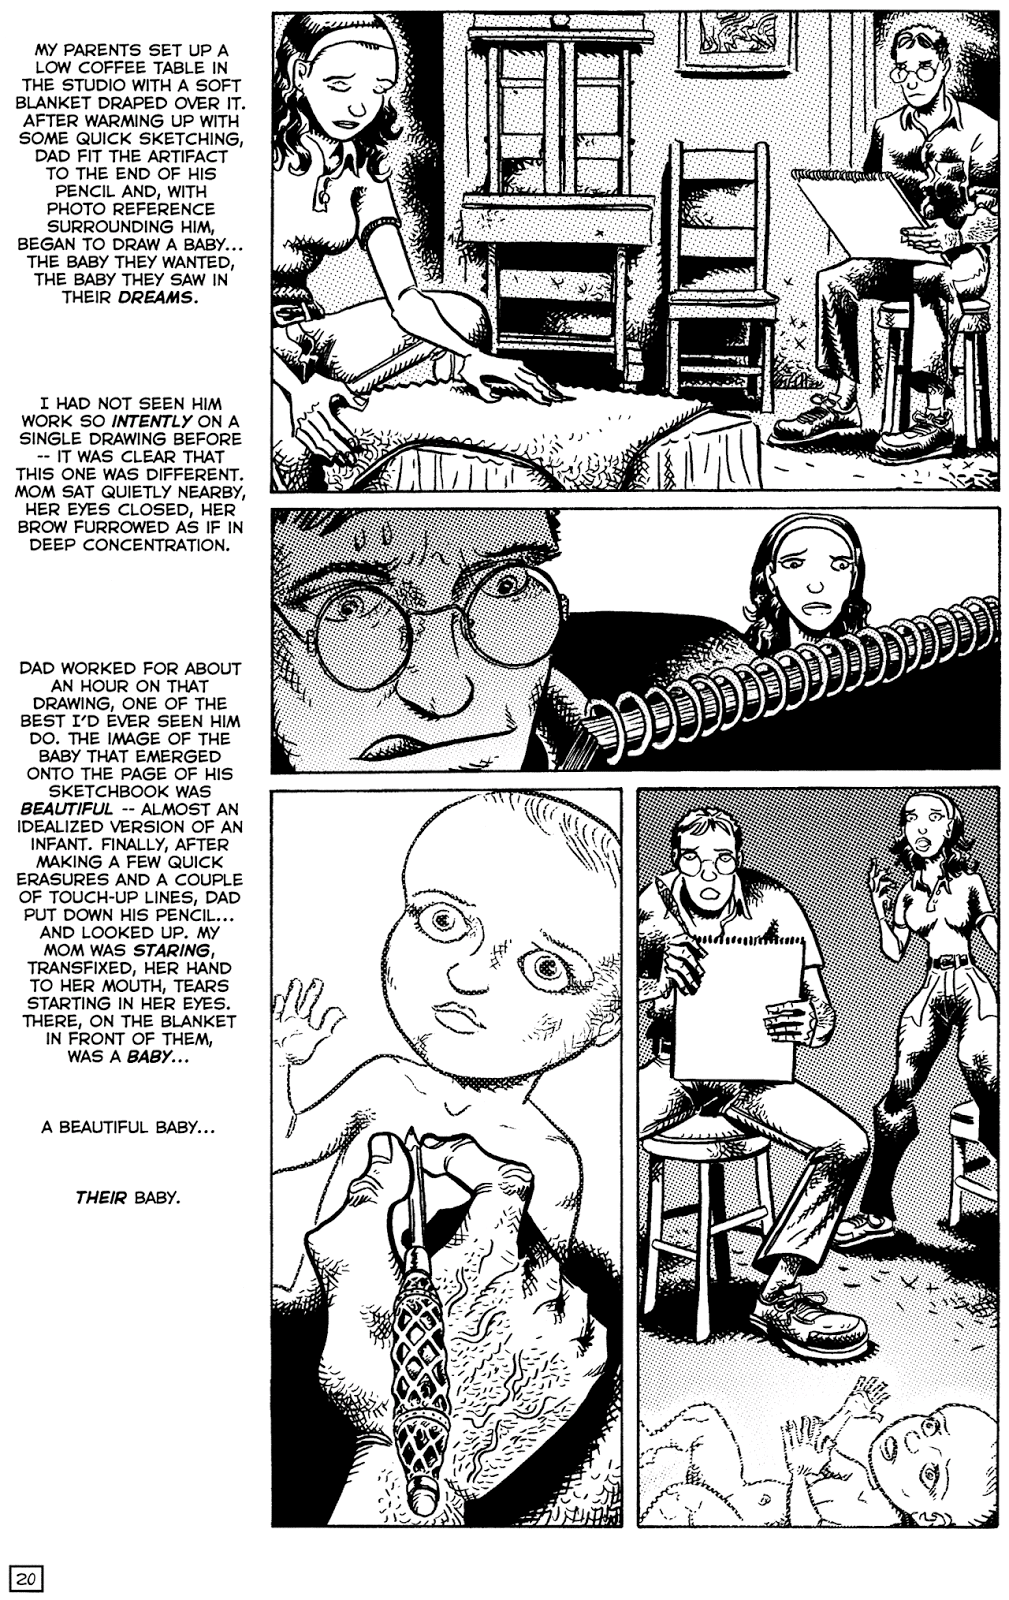 TMNT: Teenage Mutant Ninja Turtles issue 22 - Page 22